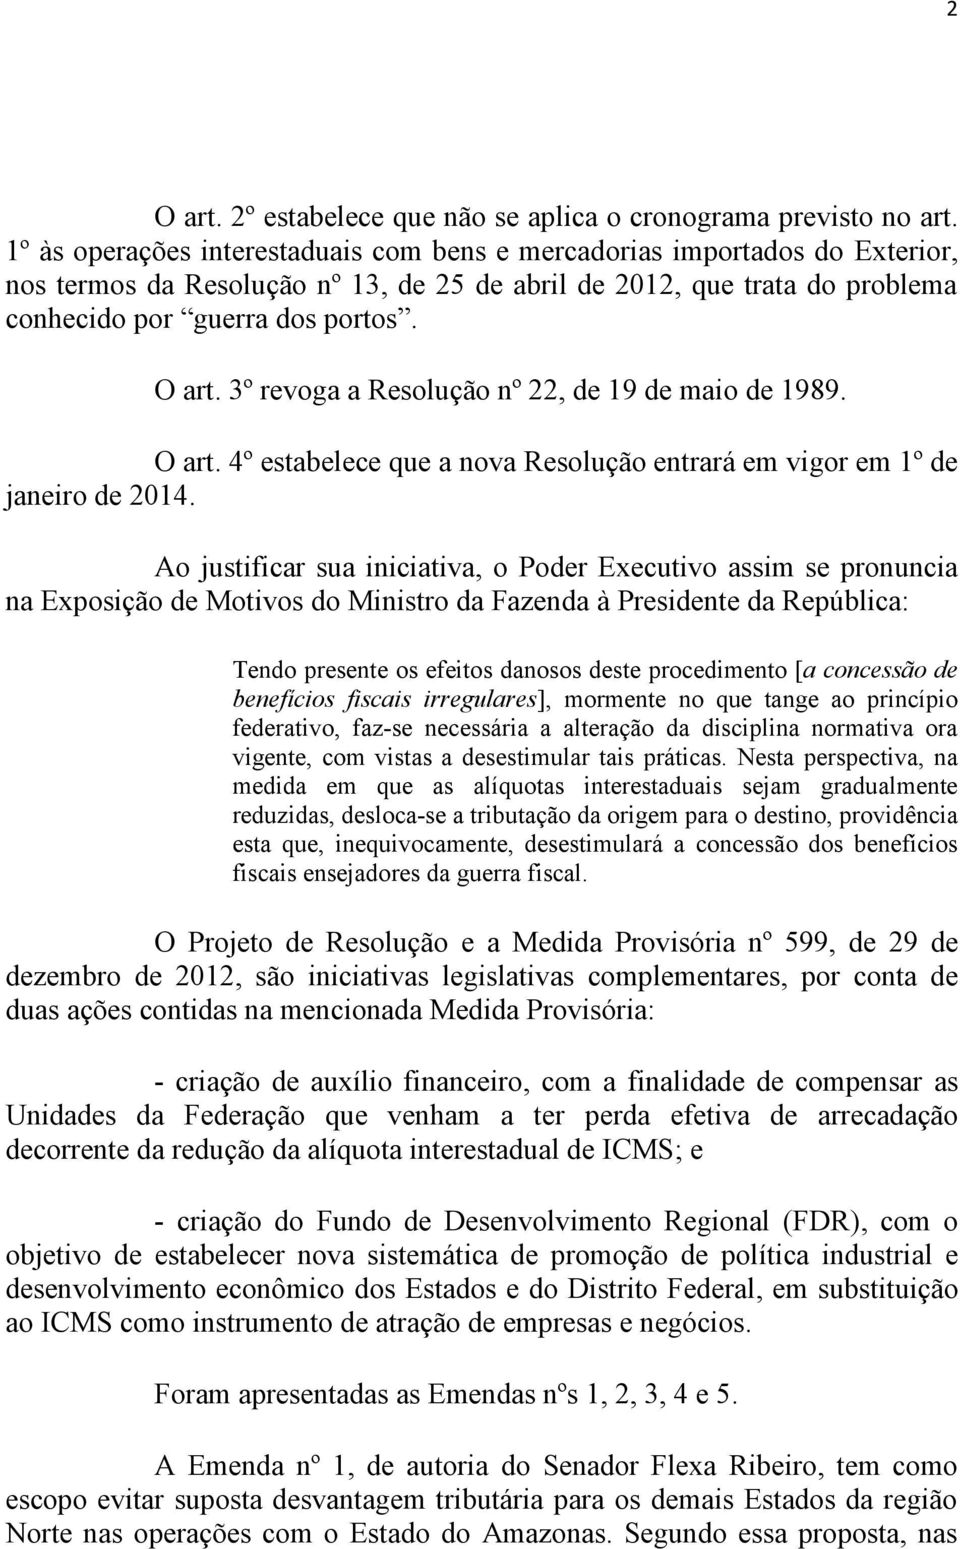 3º revoga a Resolução nº 22, de 19 de maio de 1989. O art. 4º estabelece que a nova Resolução entrará em vigor em 1º de janeiro de 2014.